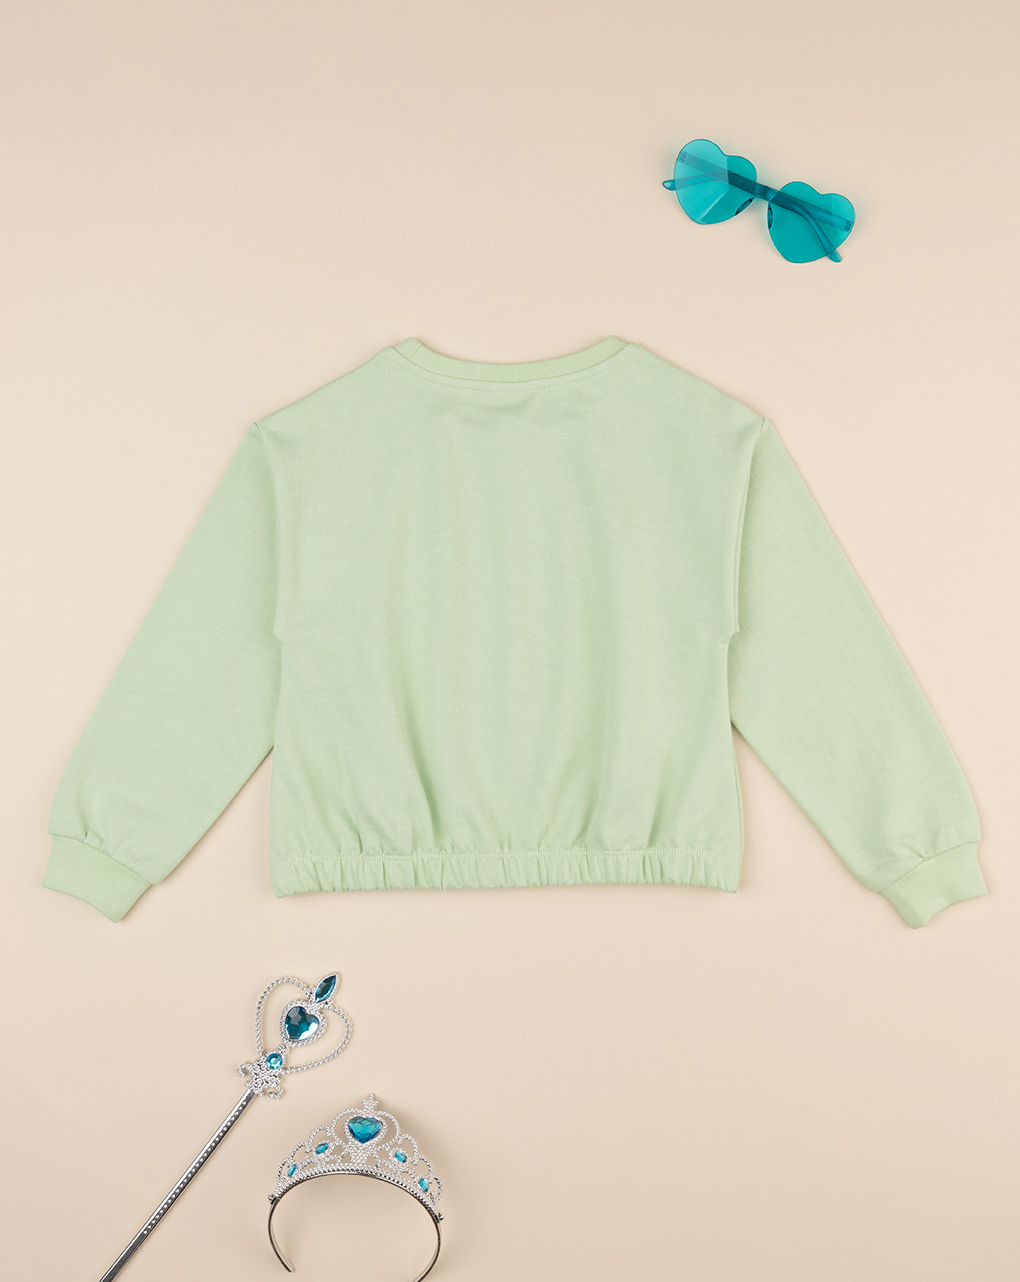 παιδική μπλούζα φούτερ πράσινη με μονόκερο για κορίτσι - Prénatal